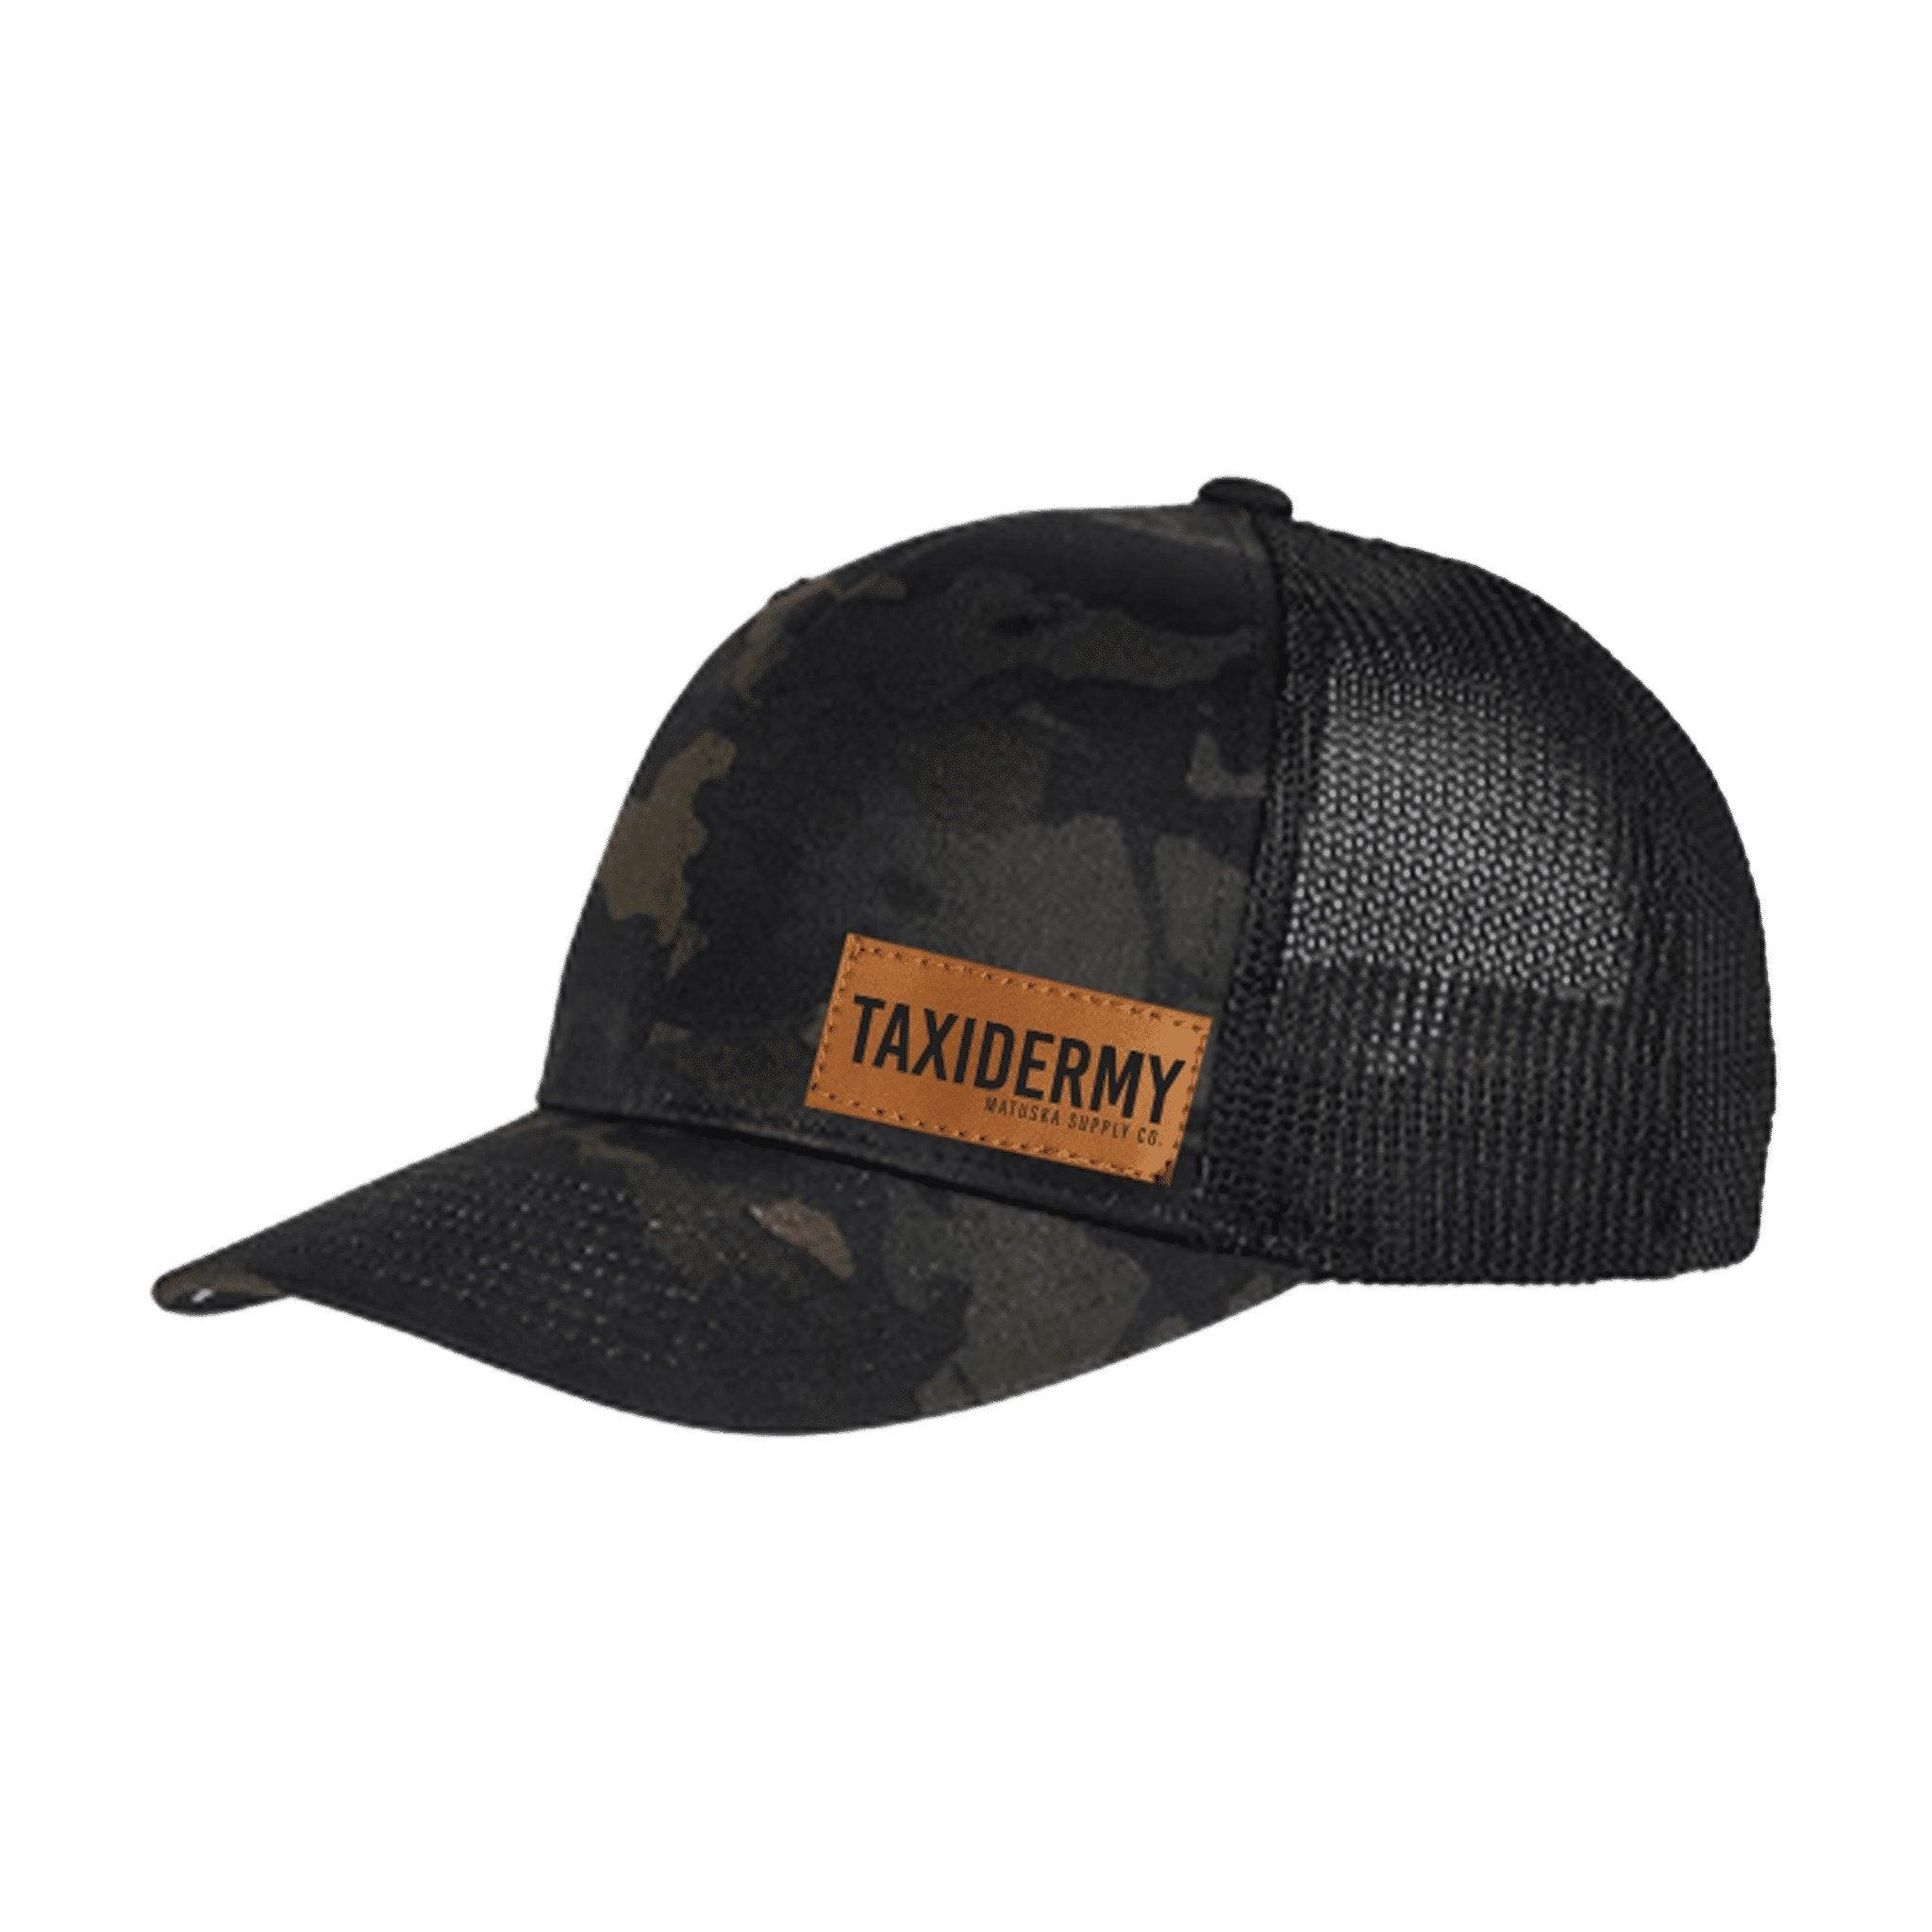 Black Camo Trucker Hat - Matuska Taxidermy Supply Company